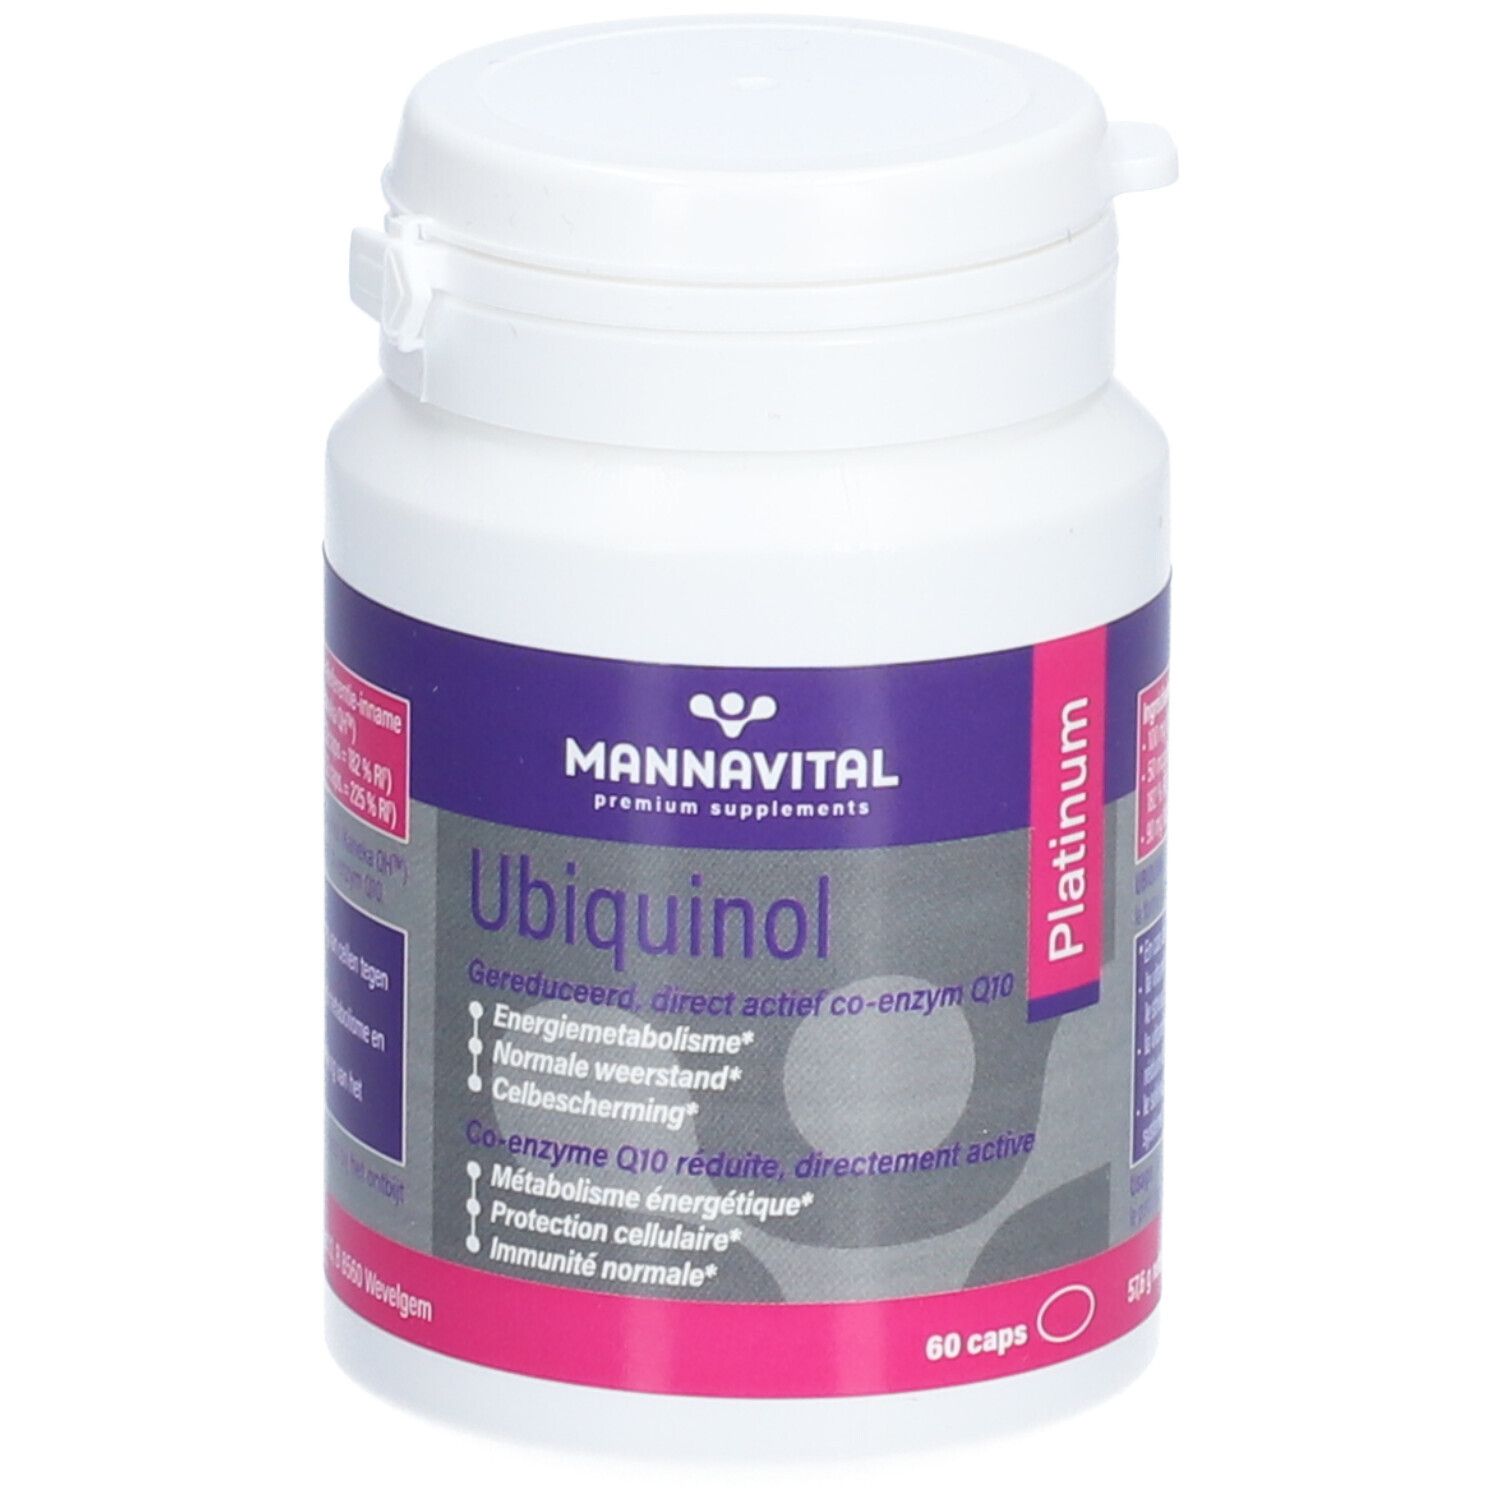 Mannavital Ubiquinol Platinum Ubiquinol Coenzym Q10